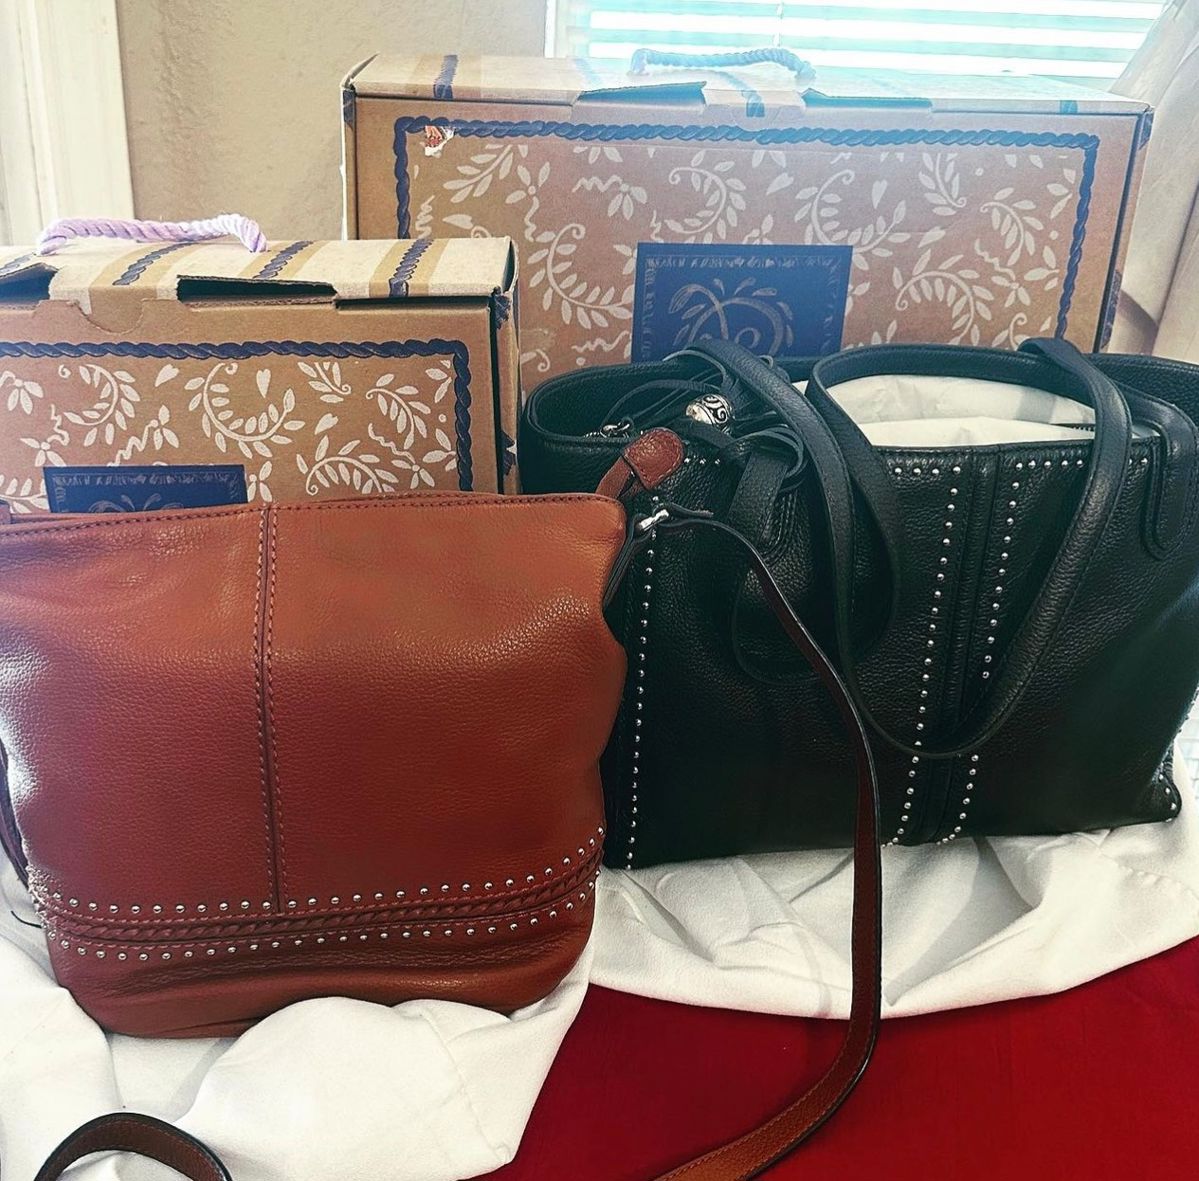 Brighton handbags in original boxes, beautiful condition!